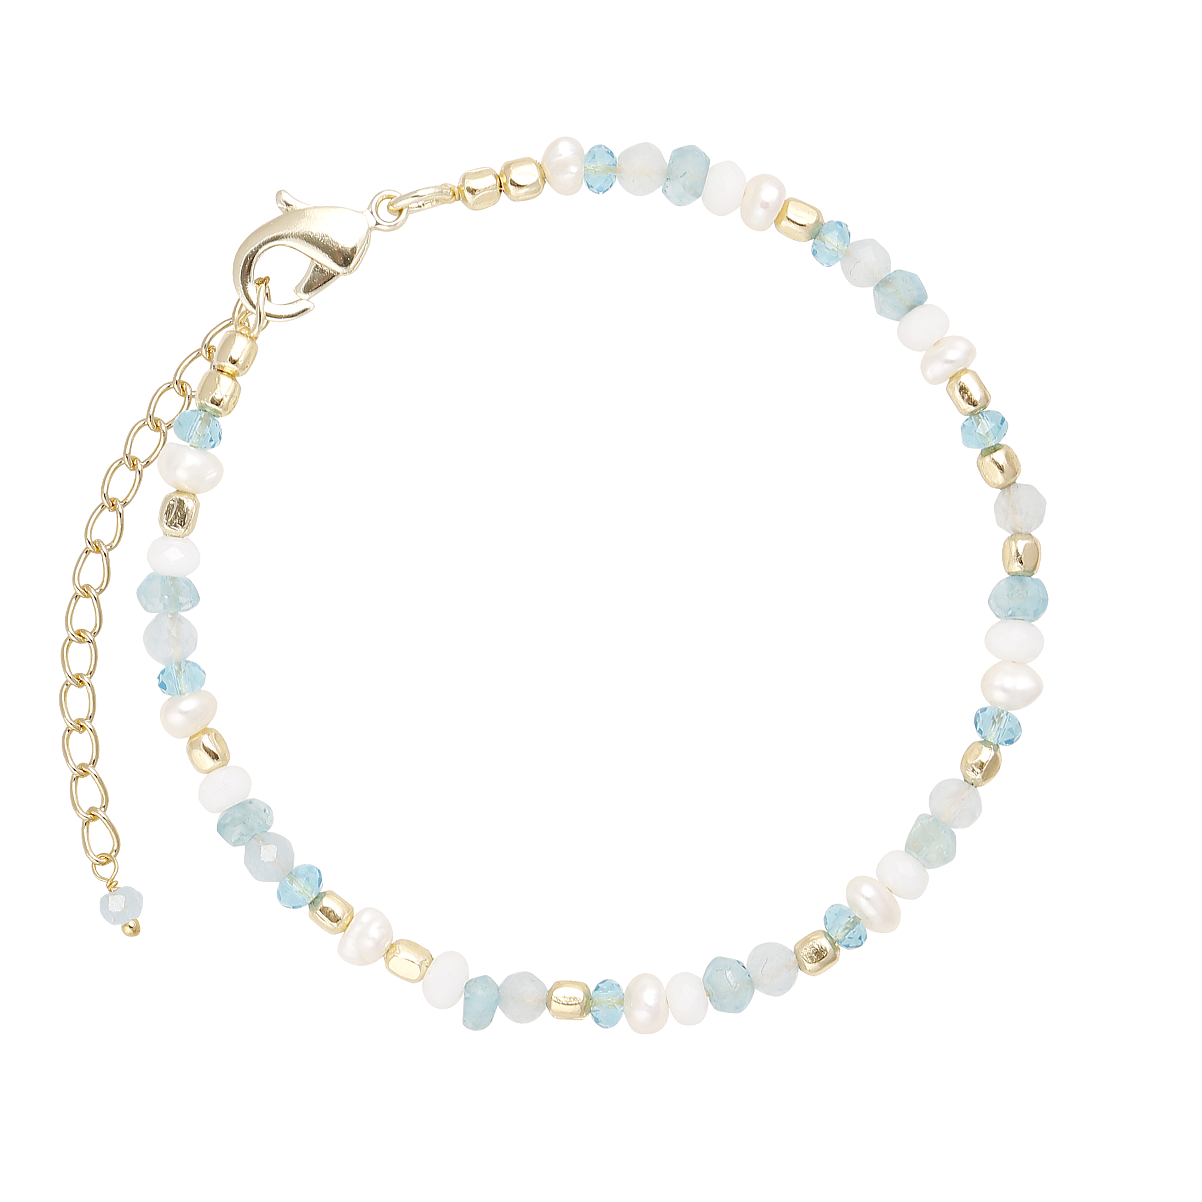 Cajoy Armkette Colorful Gems & Pearl EUR 69,99_1 13111658